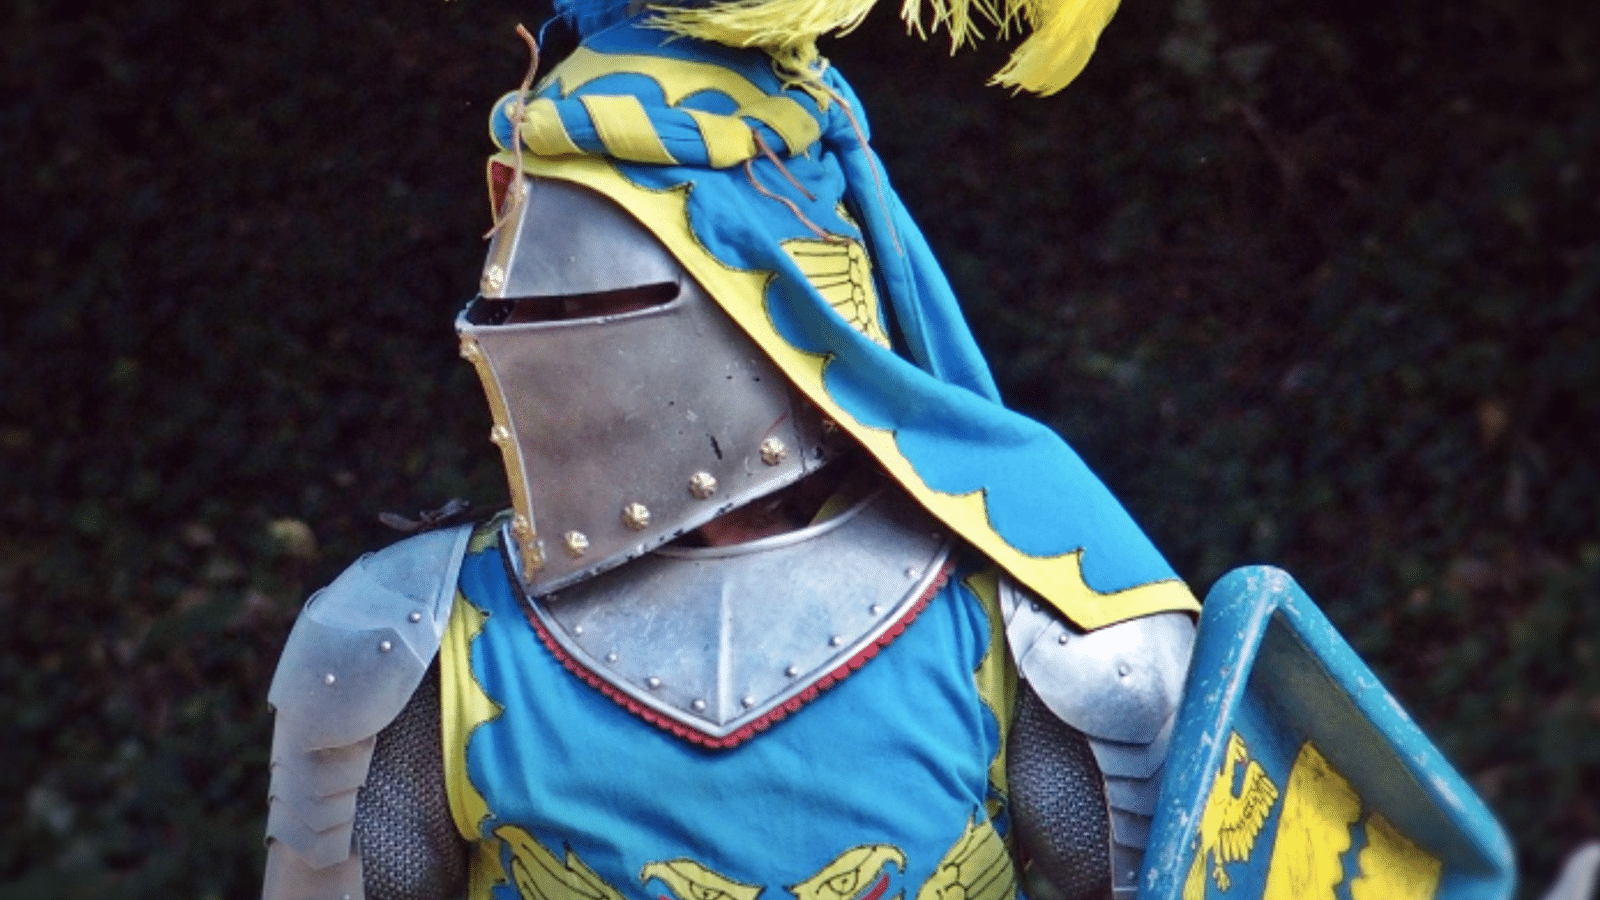 Les chevaliers, Moyen Âge